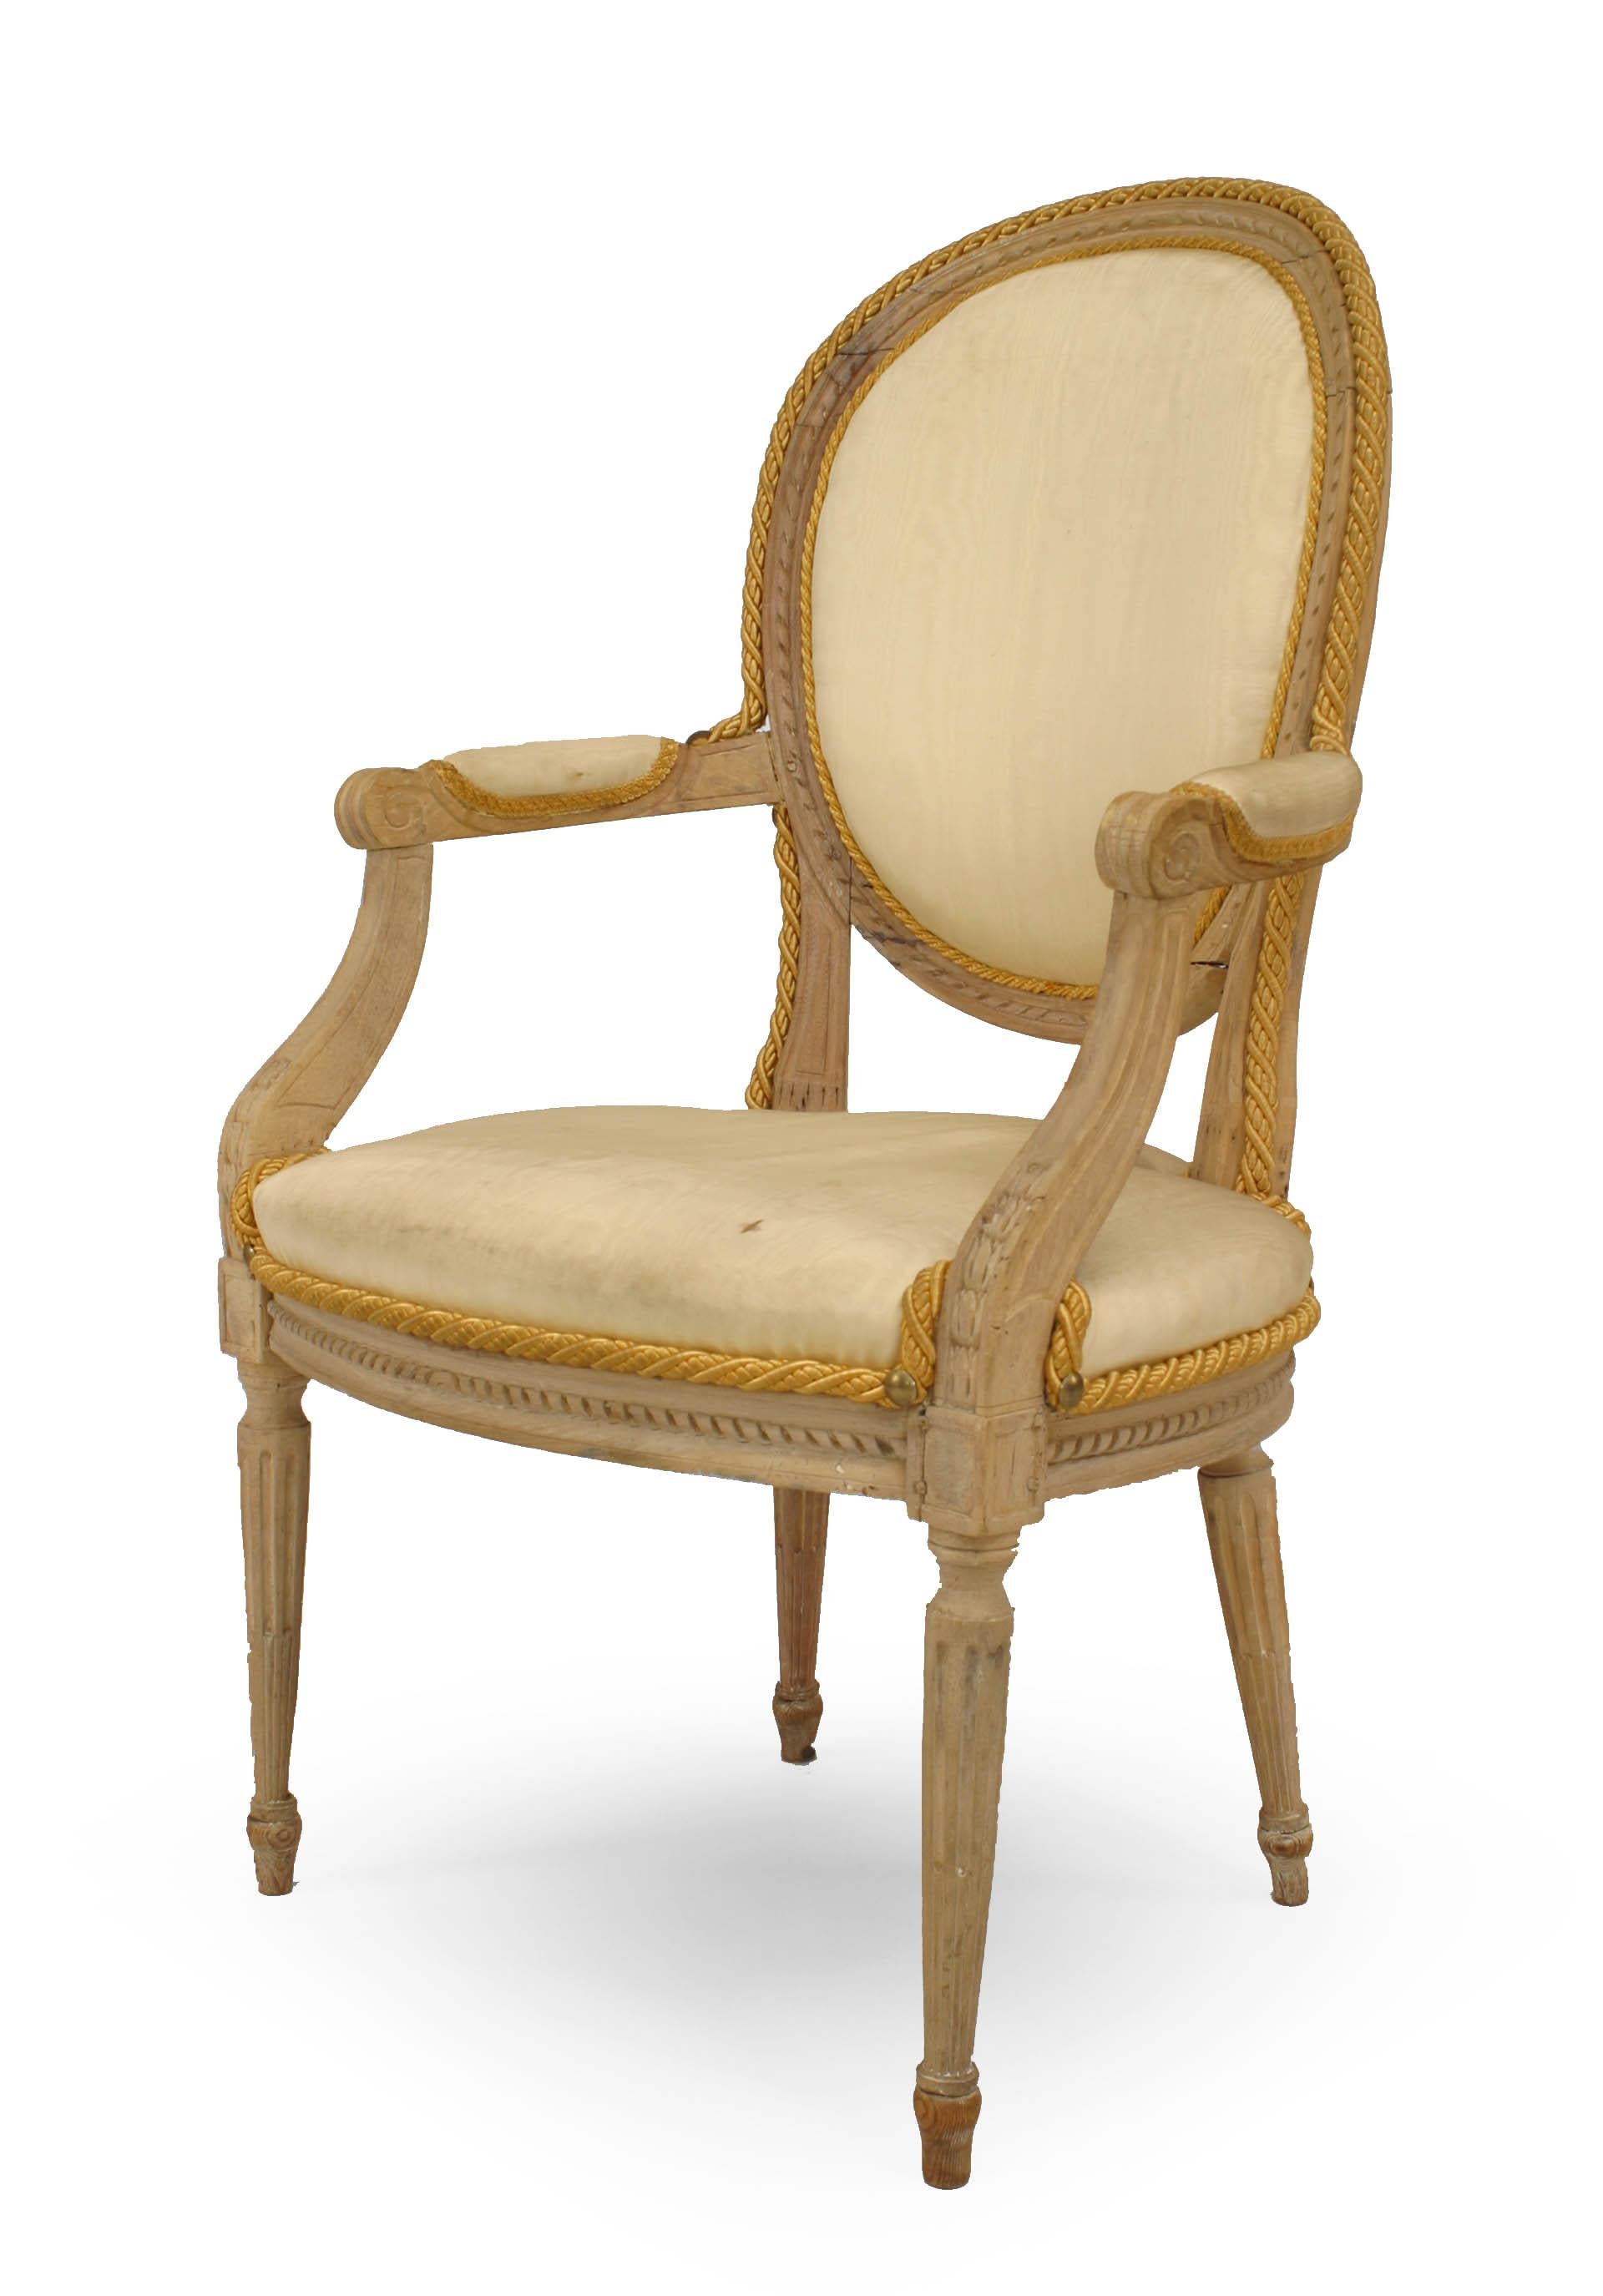 Ensemble de 10 chaises de salle à manger de style Louis XVI, avec assise et dossier ovales tapissés de soie blanche et pieds tournés cannelés. 2 accoudoirs, 8 chaises latérales, vers 1775.